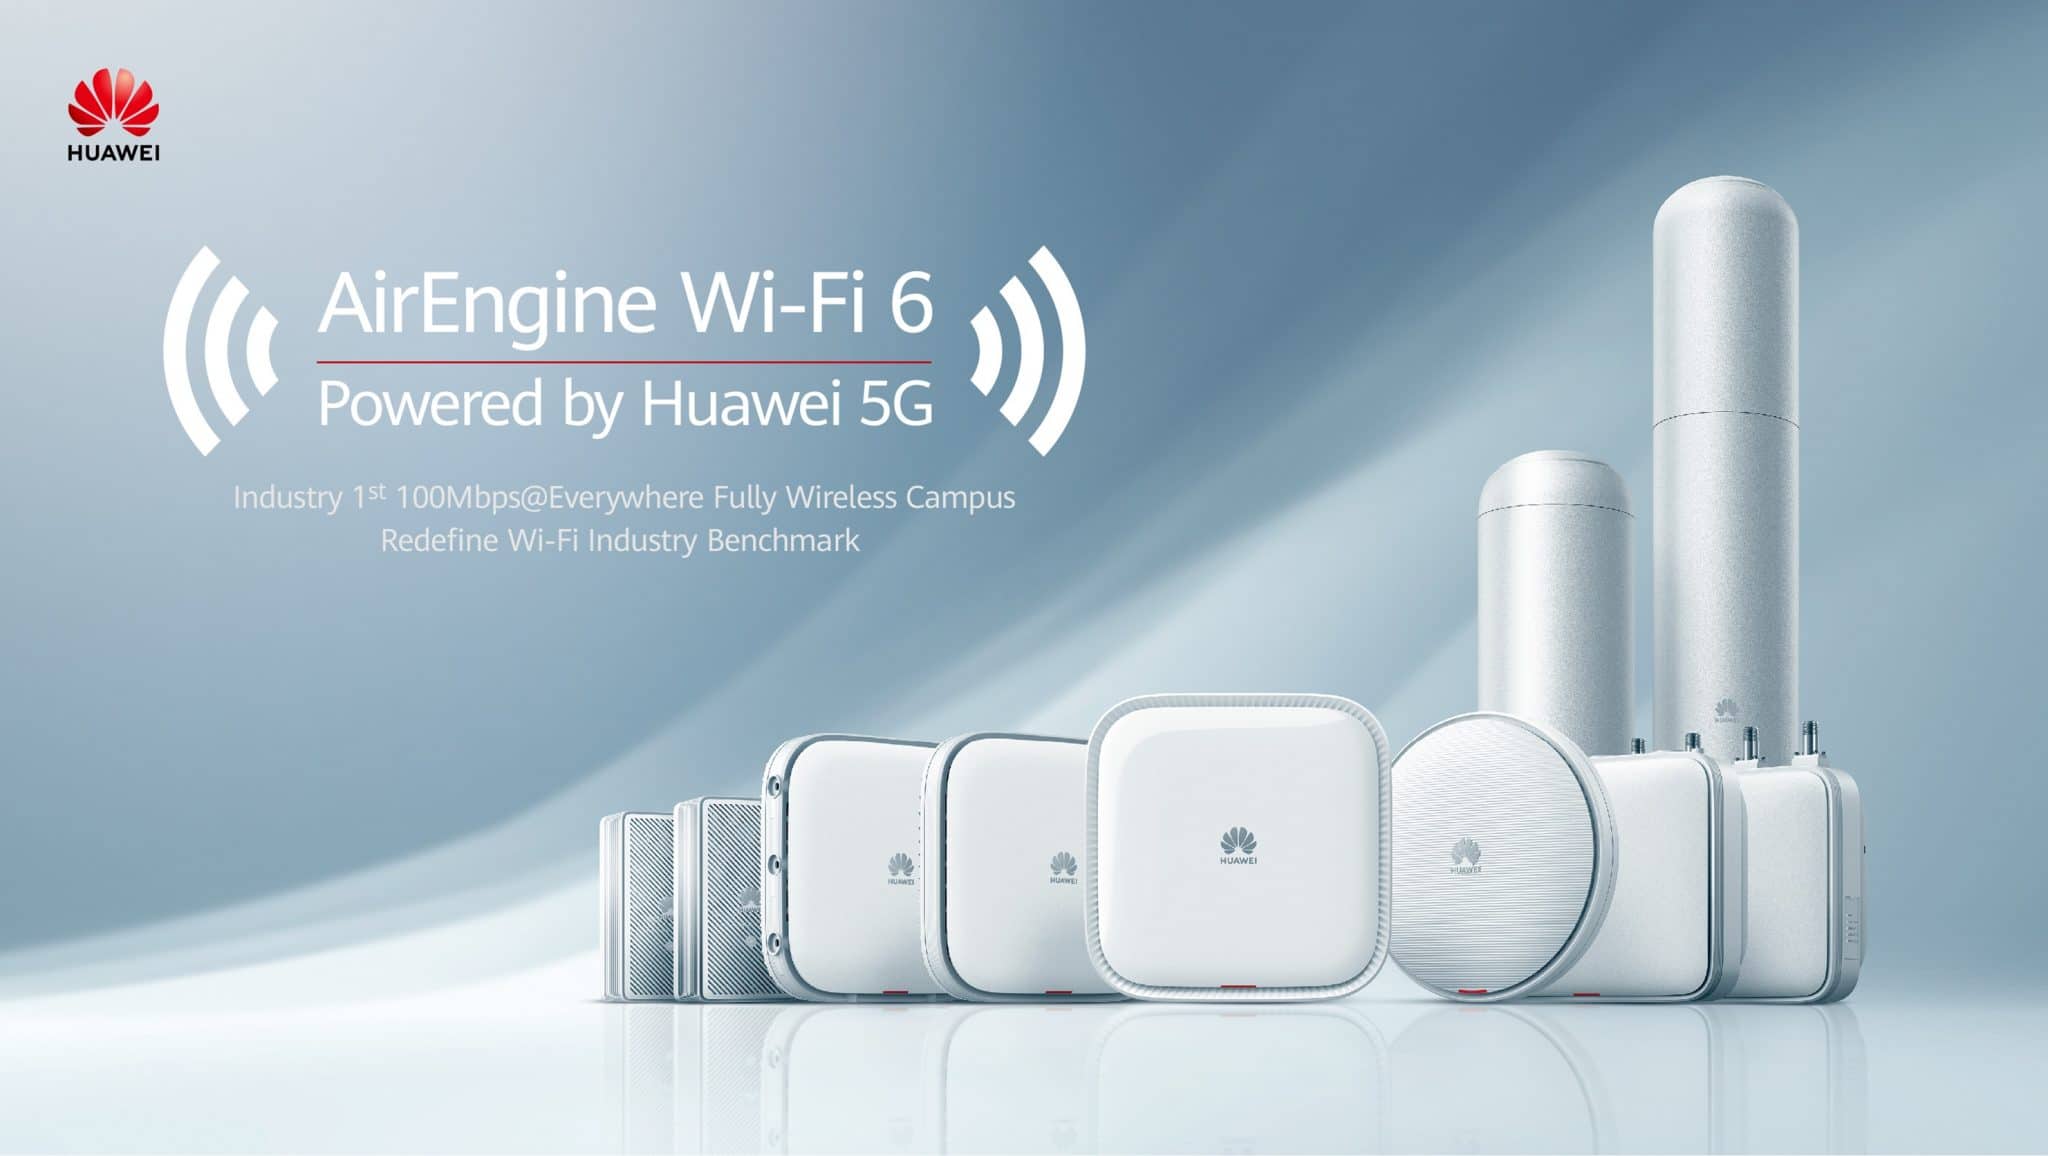 หัวเว่ย เปิดตัวผลิตภัณฑ์ Wi-Fi 6 ขุมพลัง 5G บุกตลาดเอเชียแปซิฟิก 1